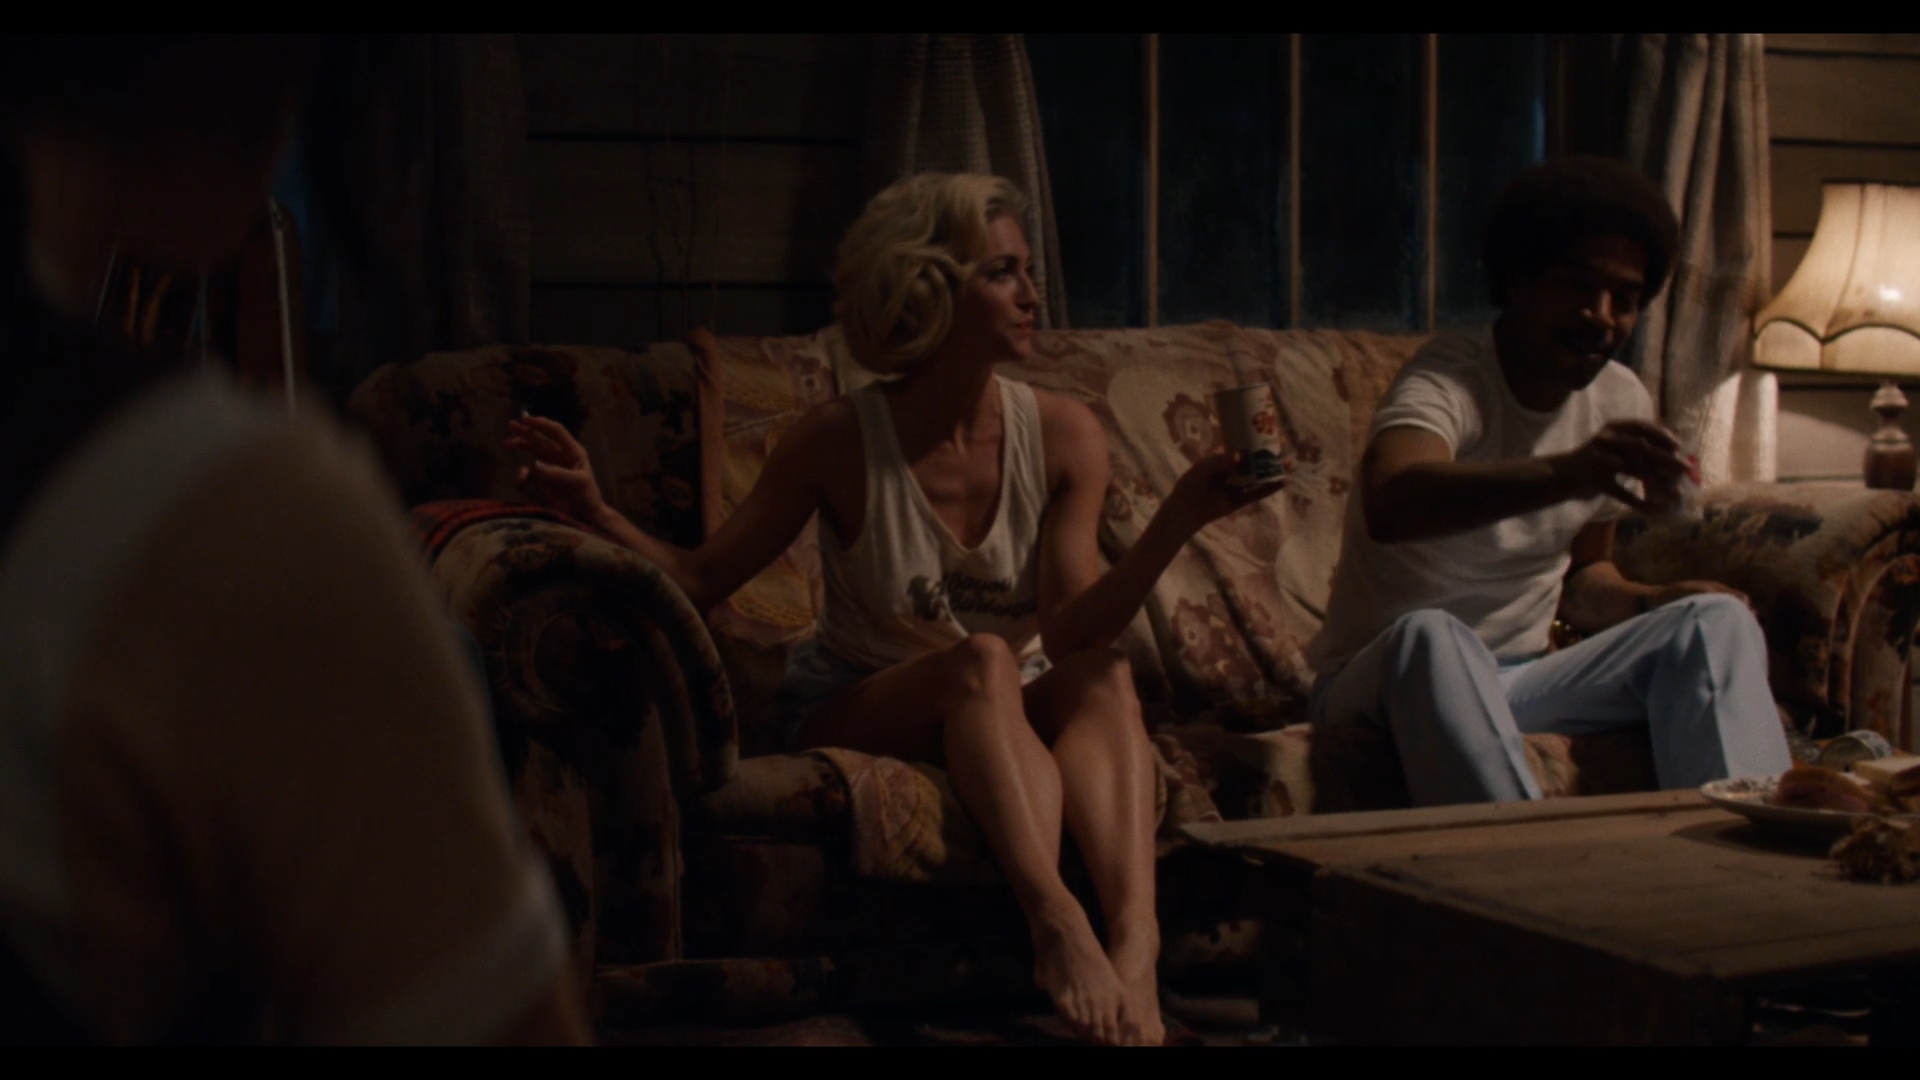 Cena do filme X. Na cena, em uma cabana pouco iluminada, vemos uma mulher loira, aparentando cerca de 35 anos, sentada em um sofá. Ao lado direito dela, vemos um homem negro, aparentando cerca de 35 anos.